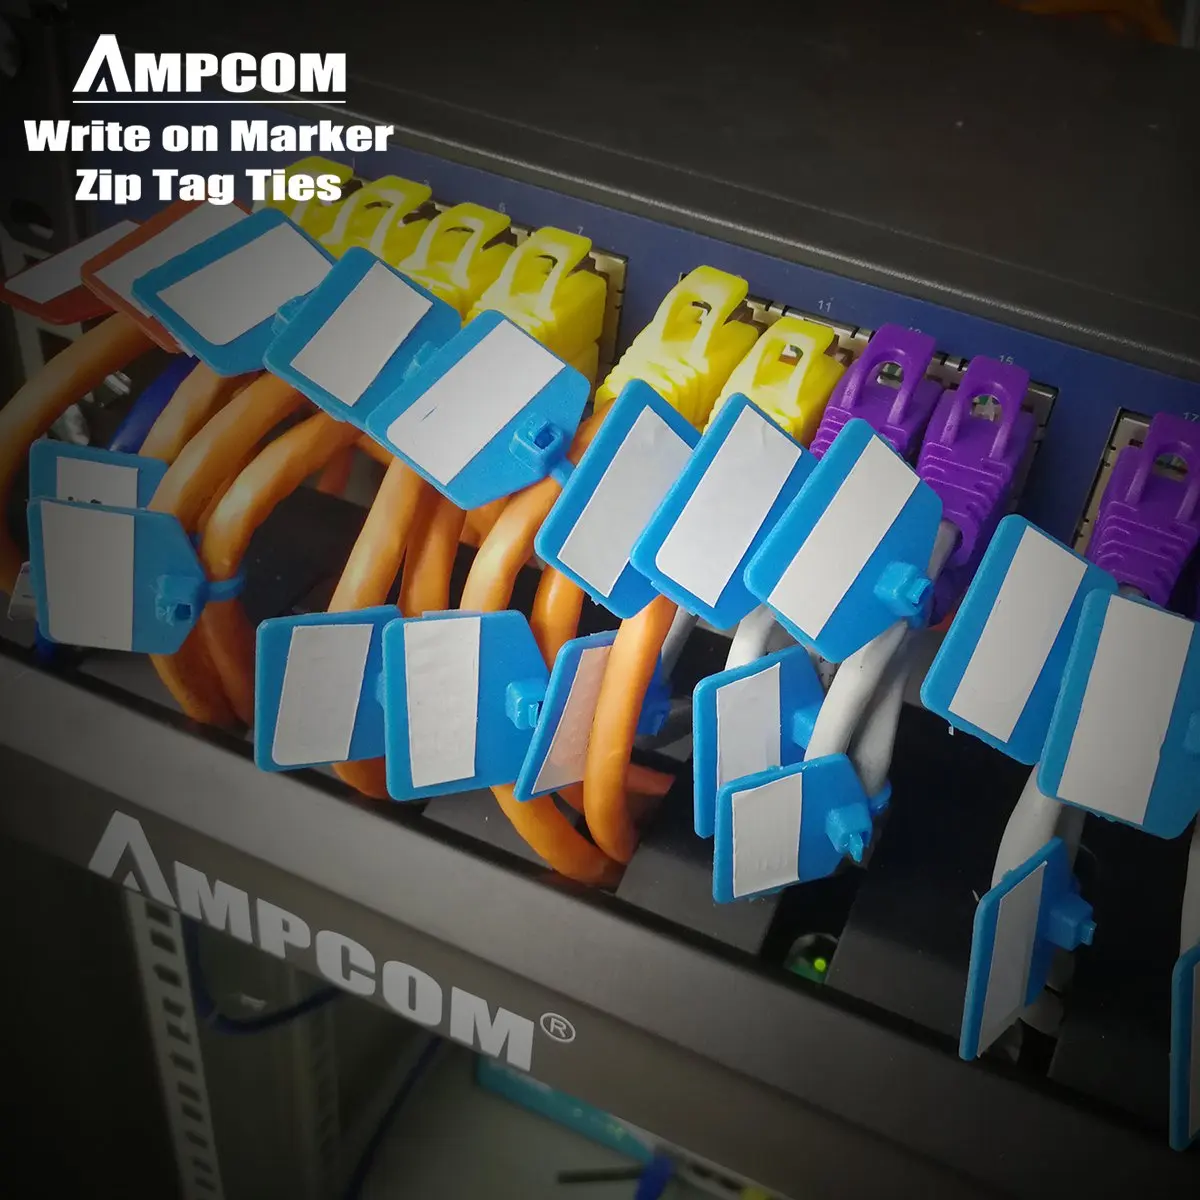 AMPCOM нейлоновые застежки кабель метка для этикетки-запись на ethernet-кабель | самоблокирующийся | Бесплатные этикетки для печати-4,72 дюймов 5 цветов